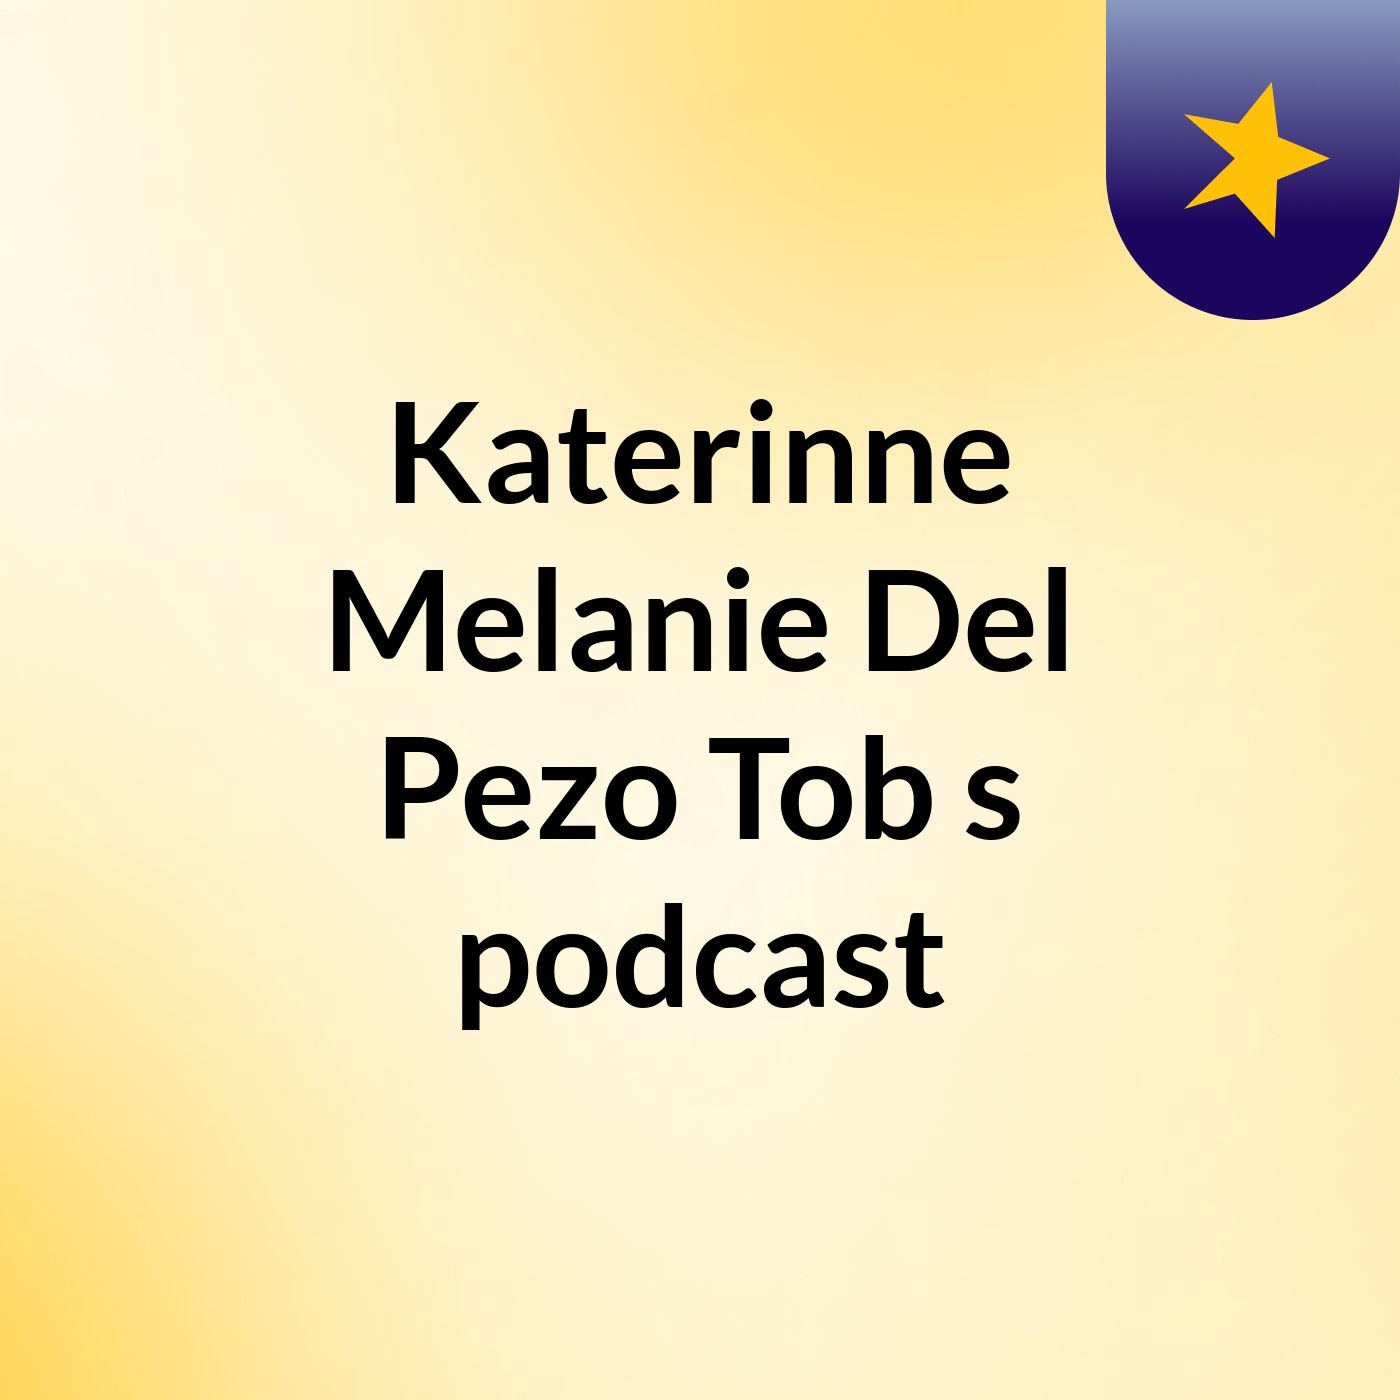 Katerinne Melanie Del Pezo Tob's podcast